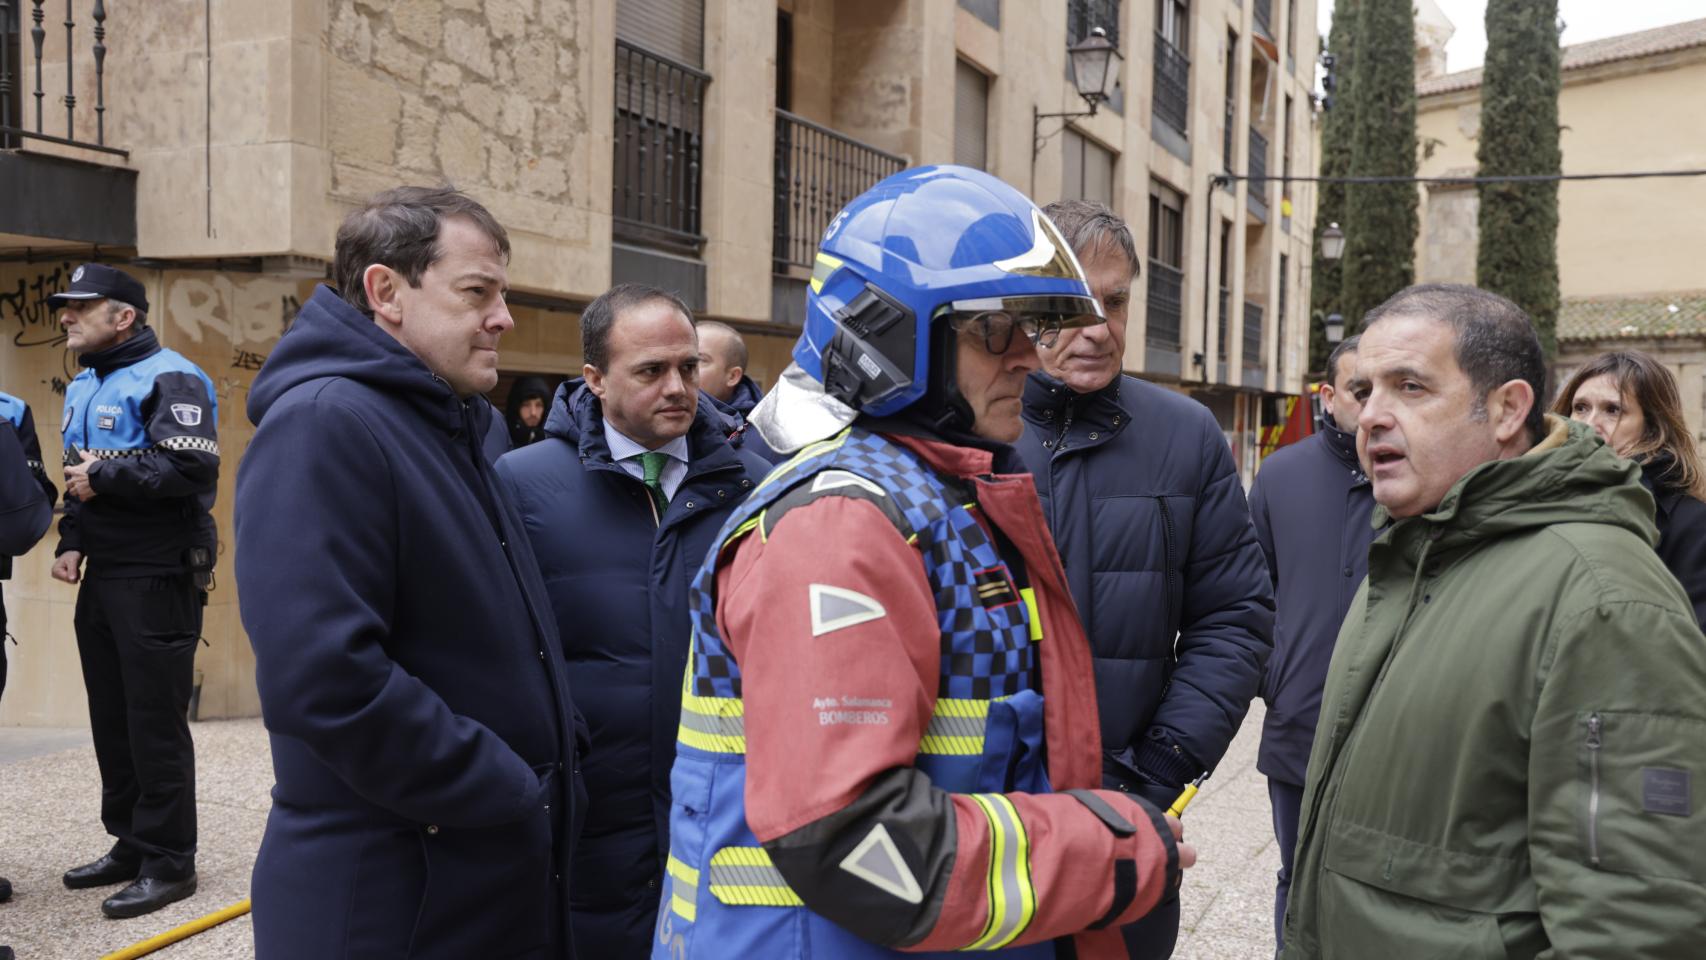 El presidente de la Junta de Castilla y León se interesa por un incendio cerca del colegio Maestro Avila, donde tenía un acto de agenda.